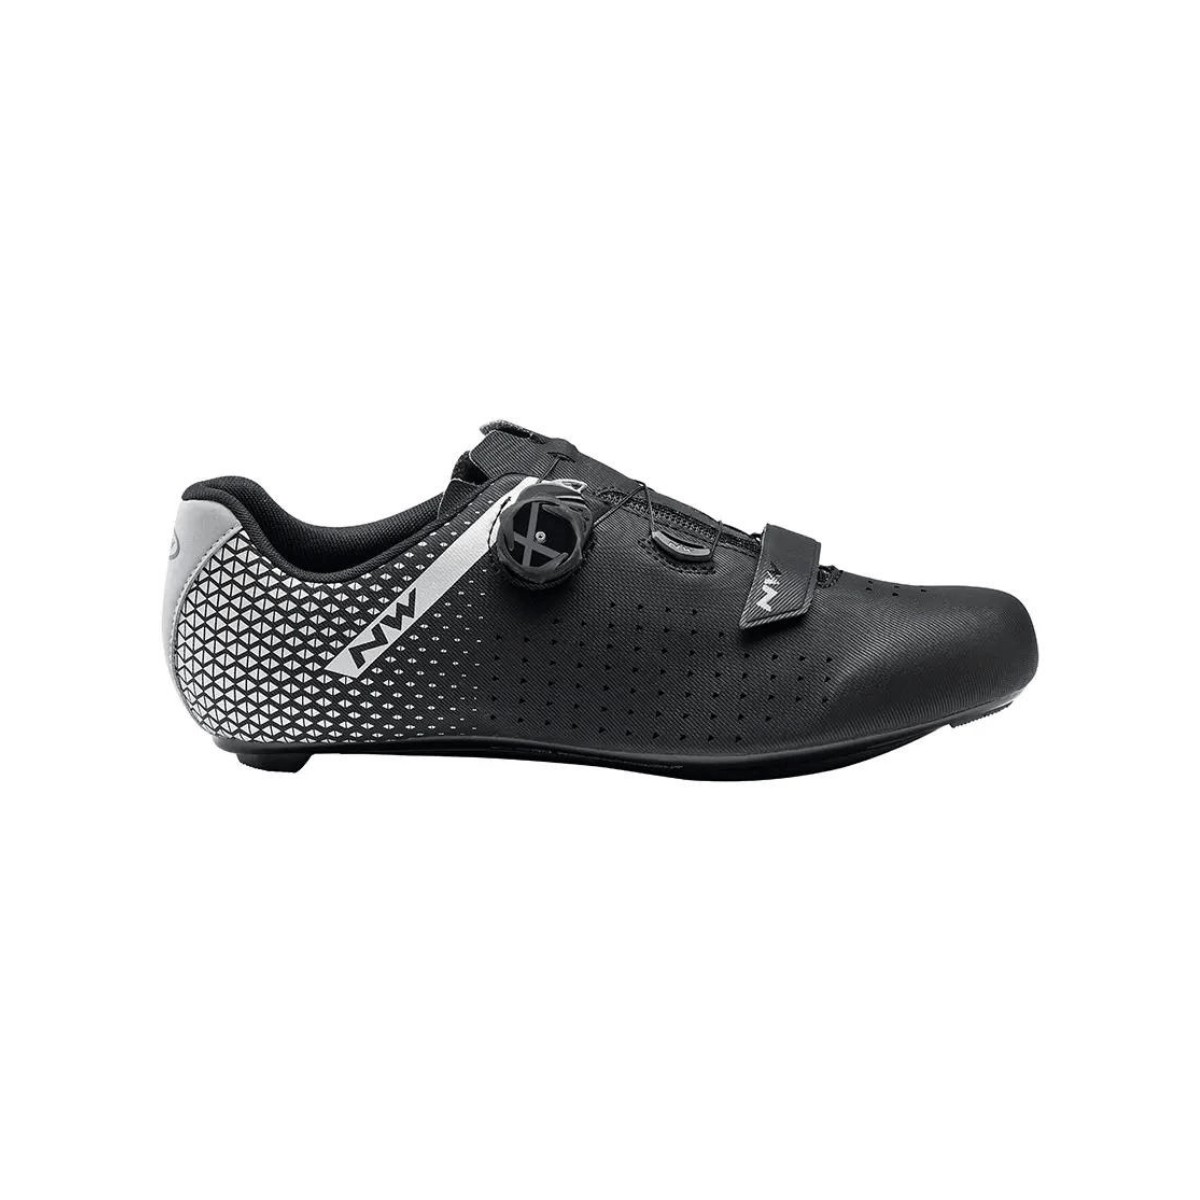 Chaussures Northwave Core Plus 2 Noir Argenté, Taille 40 - EUR